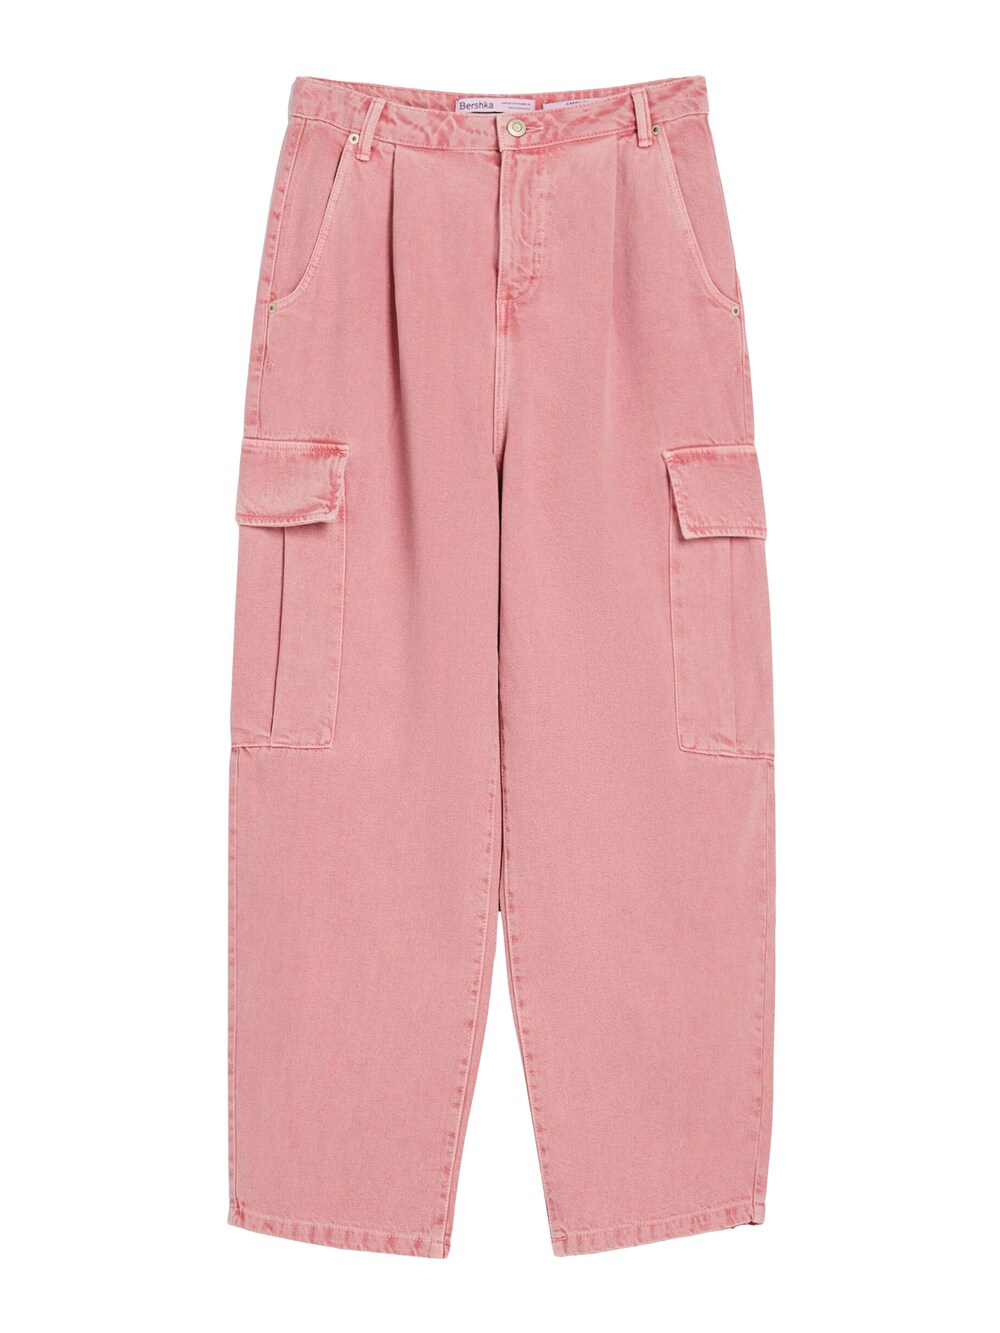 Широкие джинсы-карго Bershka, темно-розовый